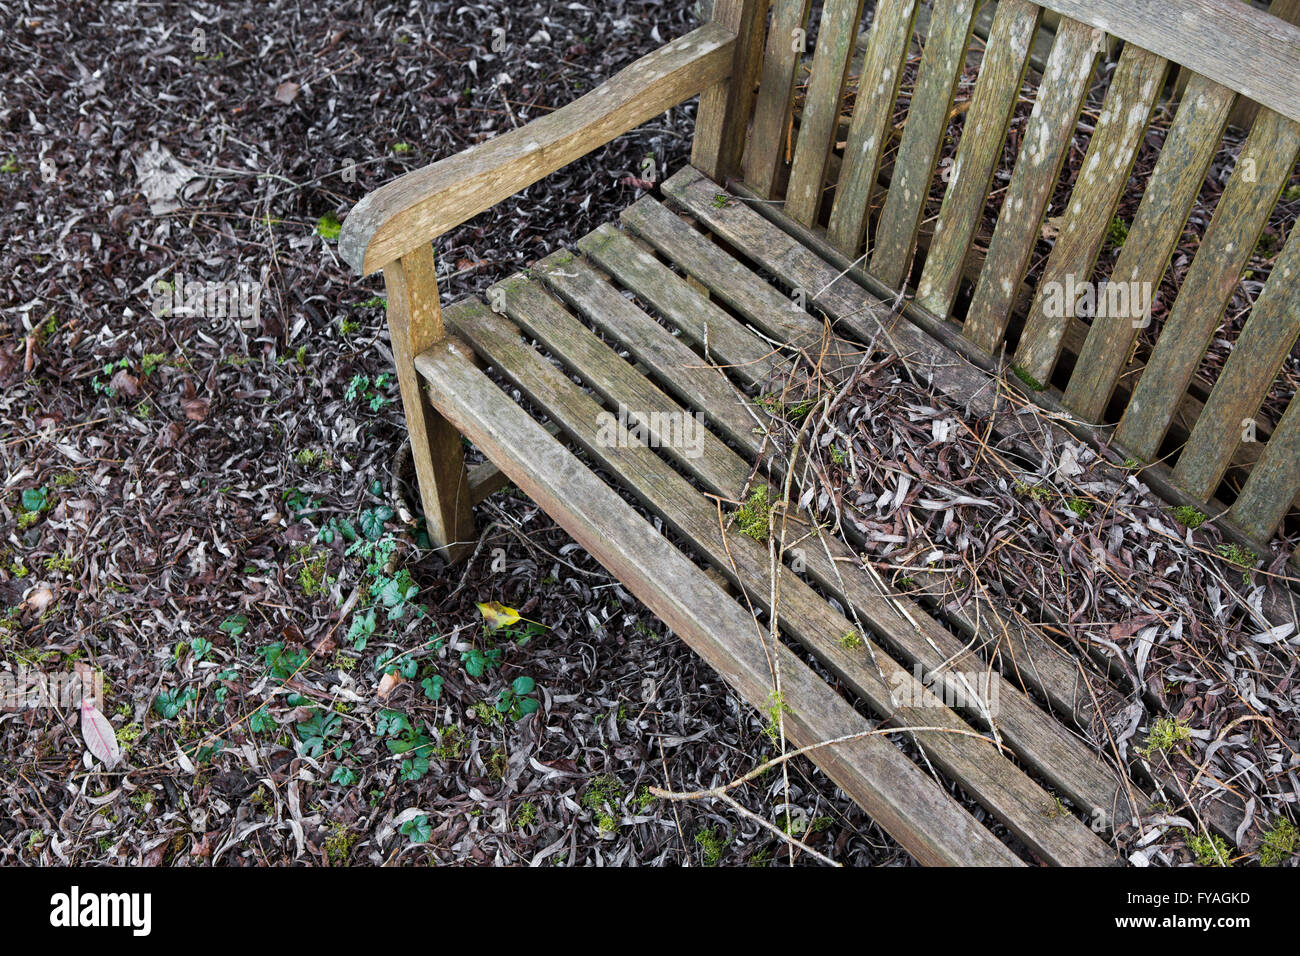 De style meubles de jardin en bois couverts assis dans les feuilles mortes à l'extérieur . Banque D'Images